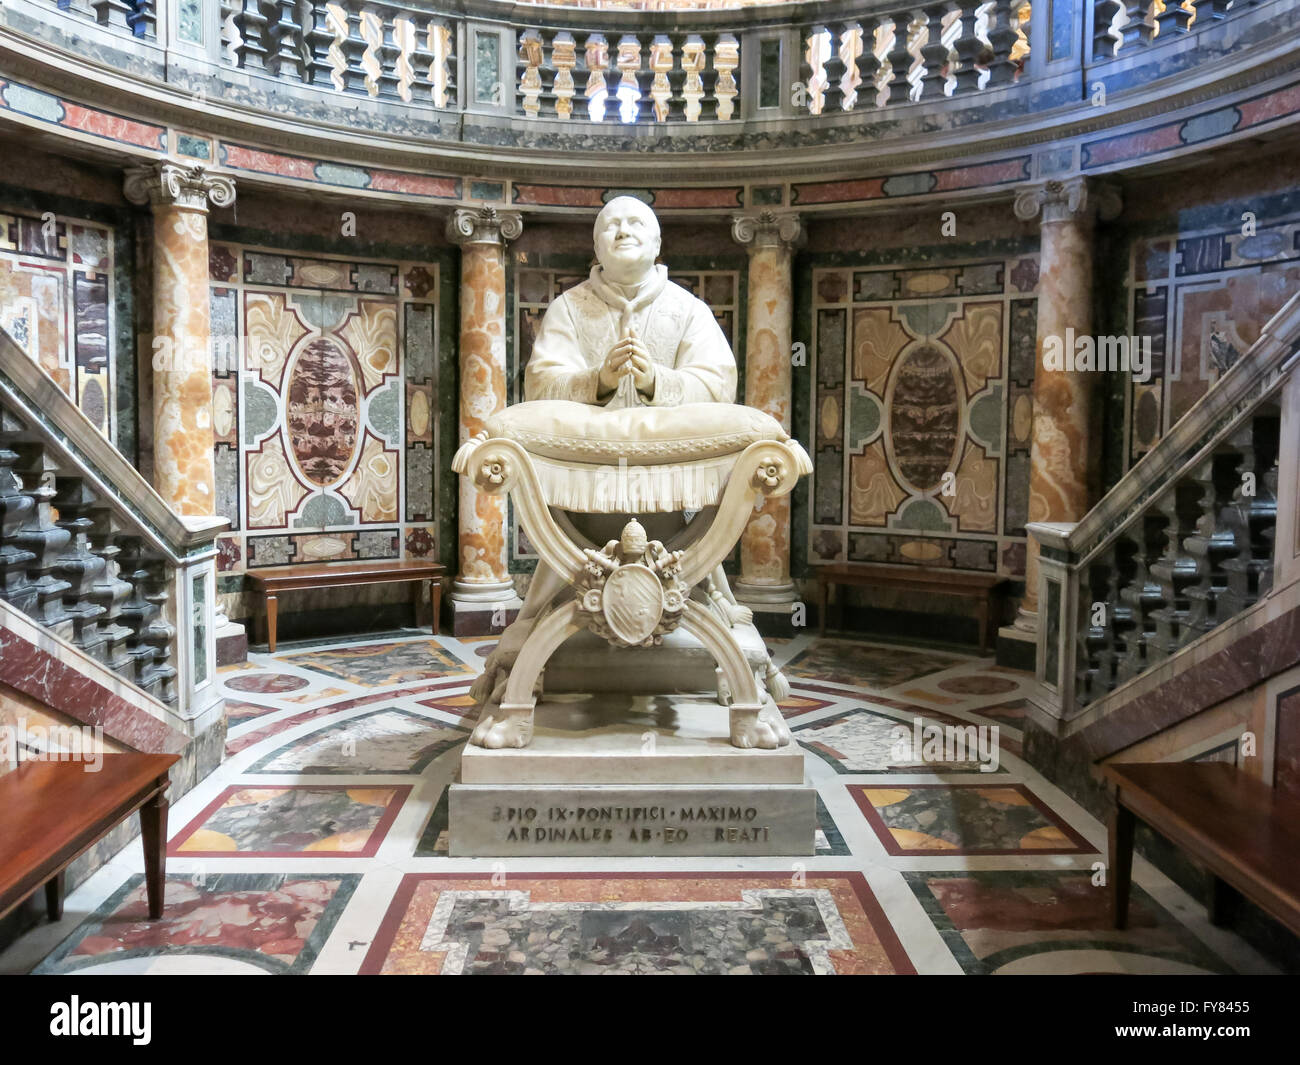 Statue Pope Pius IX in Basilica di Santa Maria Maggiore or Basilica of Saint Mary Major in Rome, Italy Stock Photo